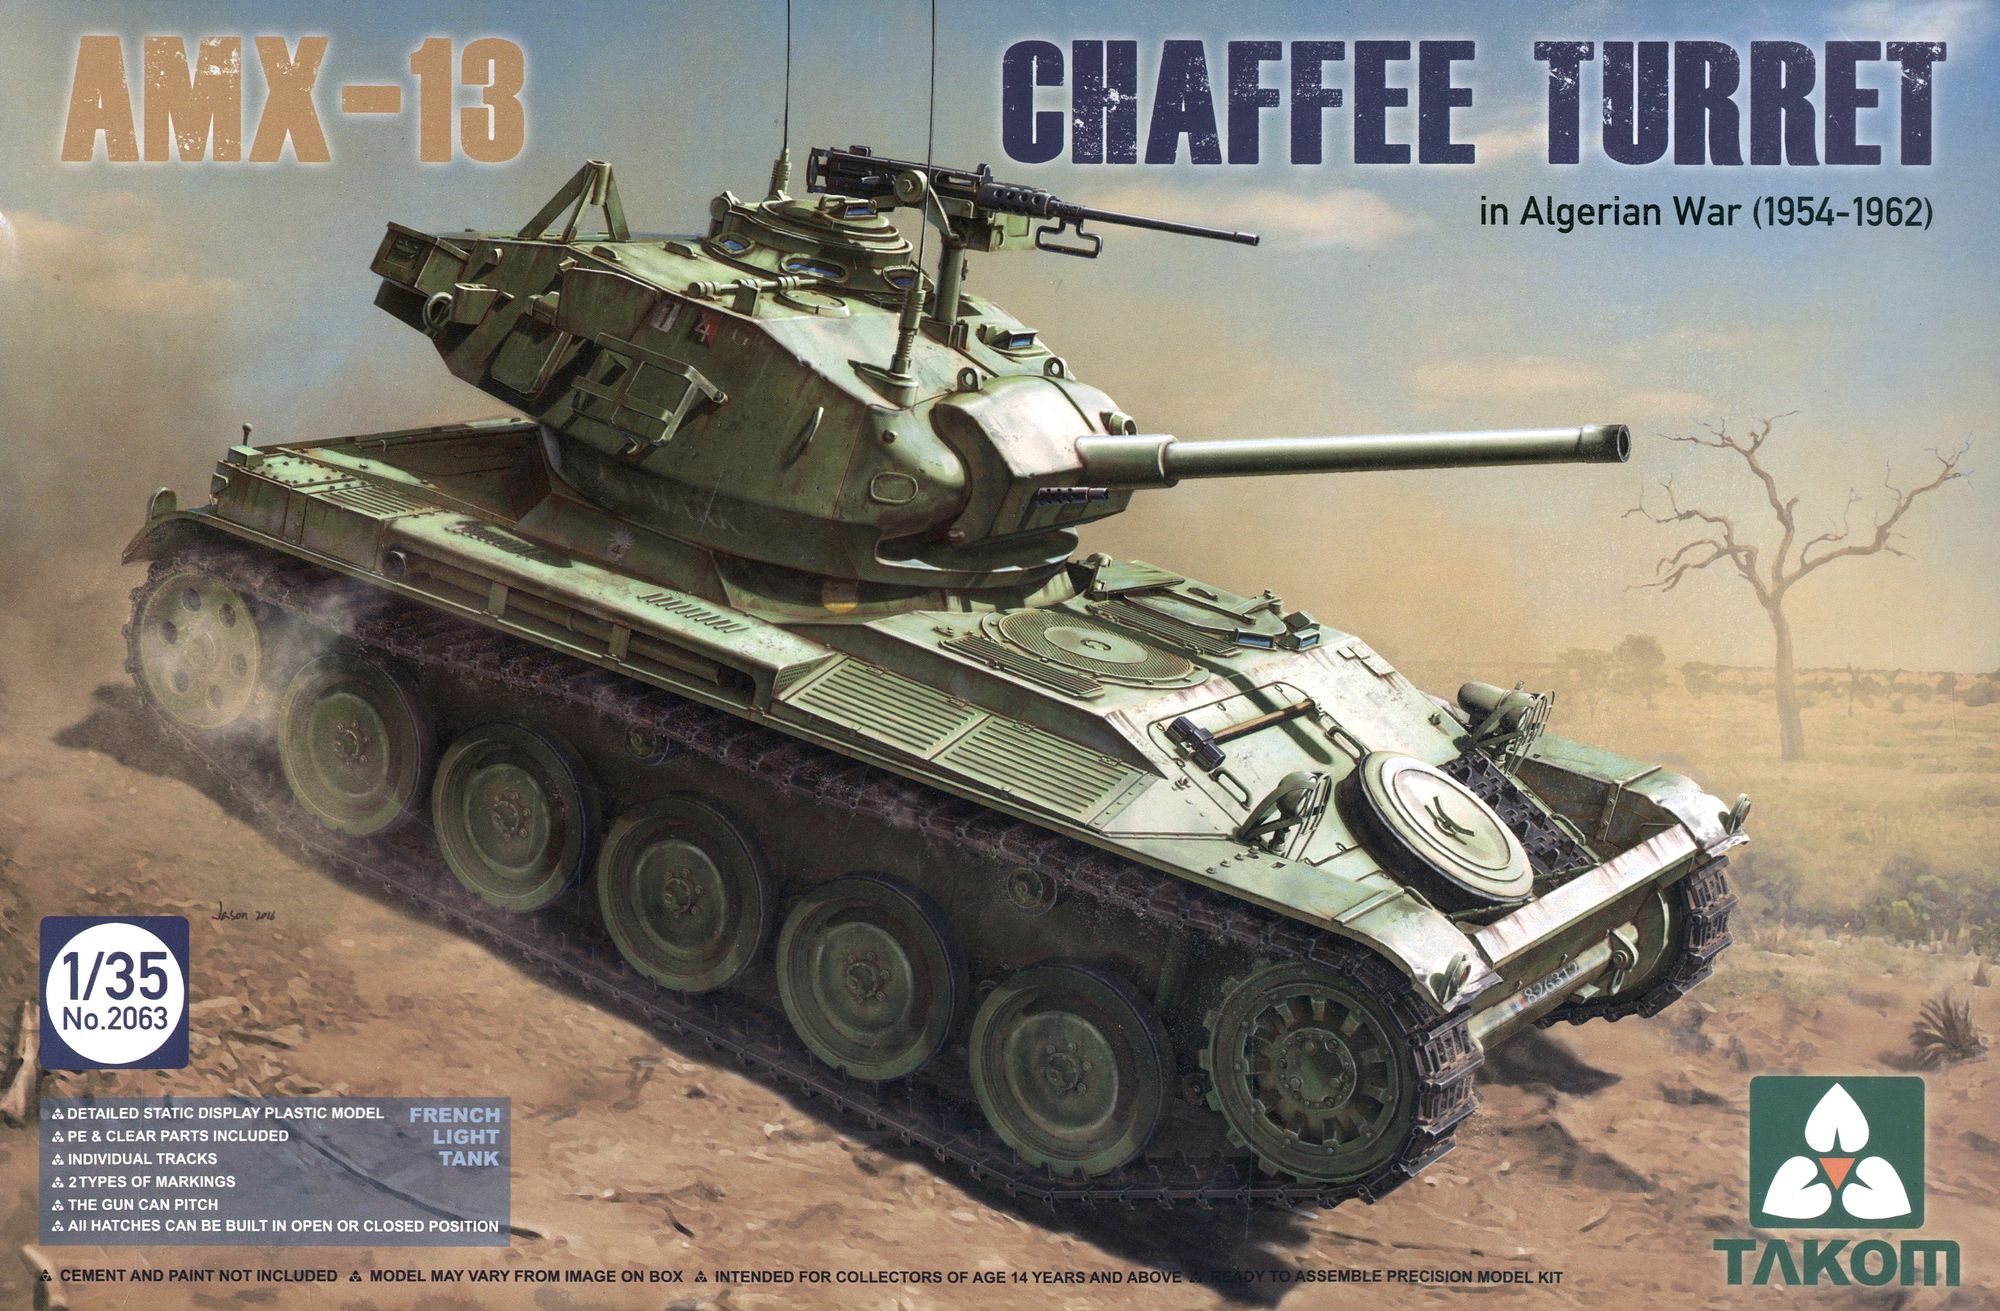 TKO2063 タコム 1/35 AMX-13 チャ-フィー砲塔 フランス軍 軽戦車 アルジェリア戦争(1954年-1962年)